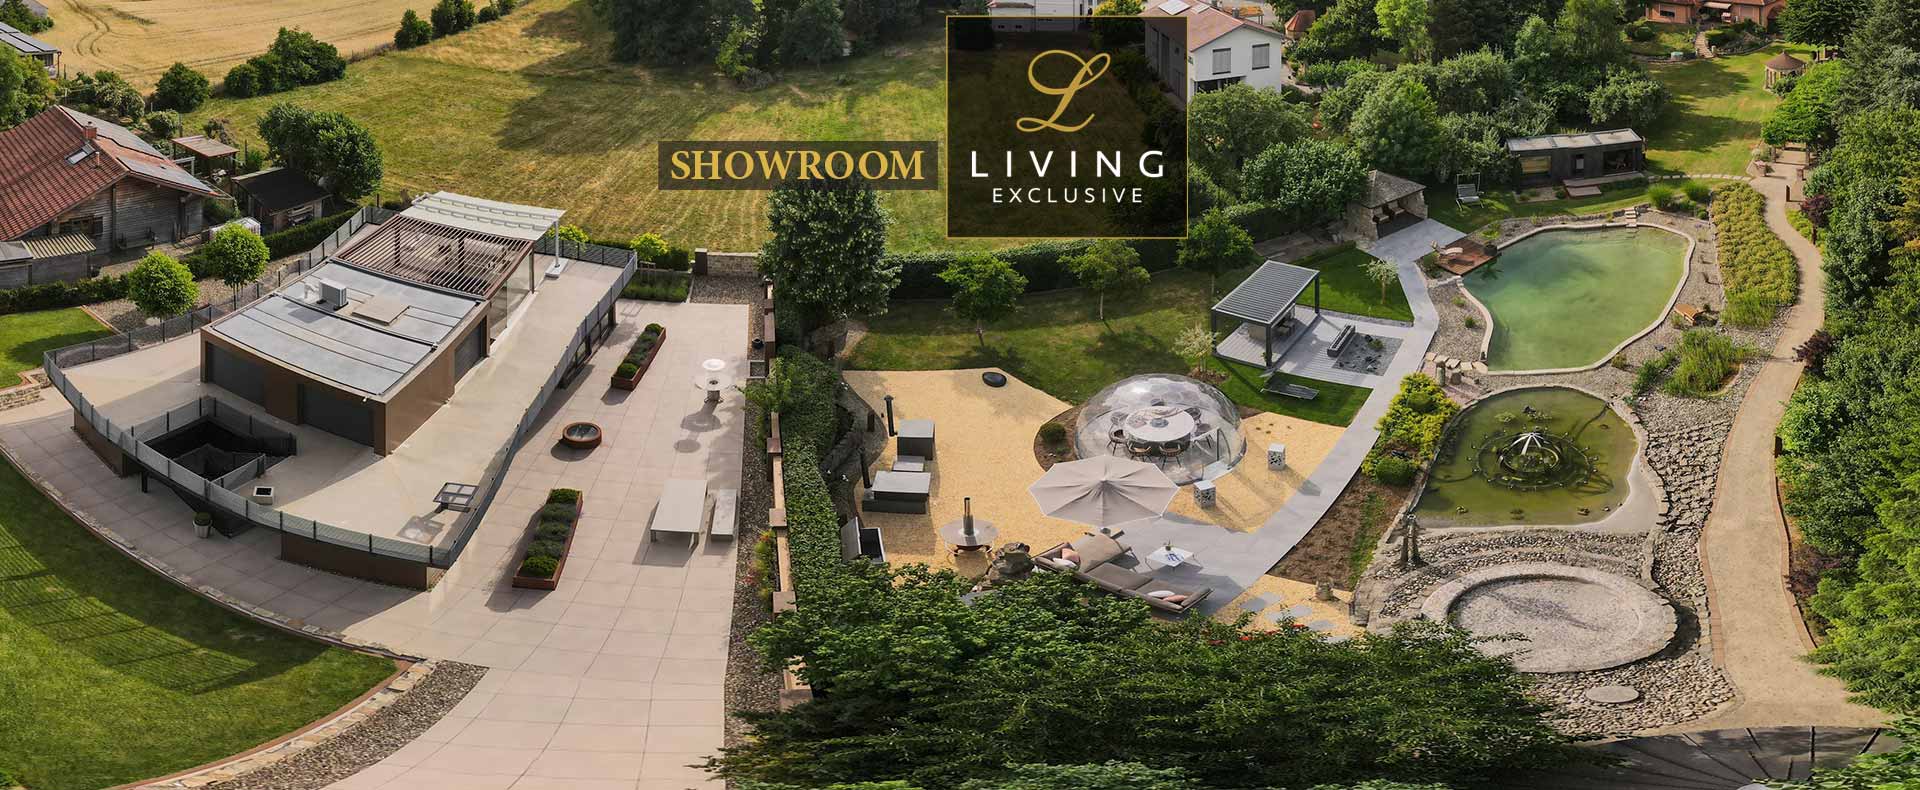 Showroom Living Exclusive Ebensfeld